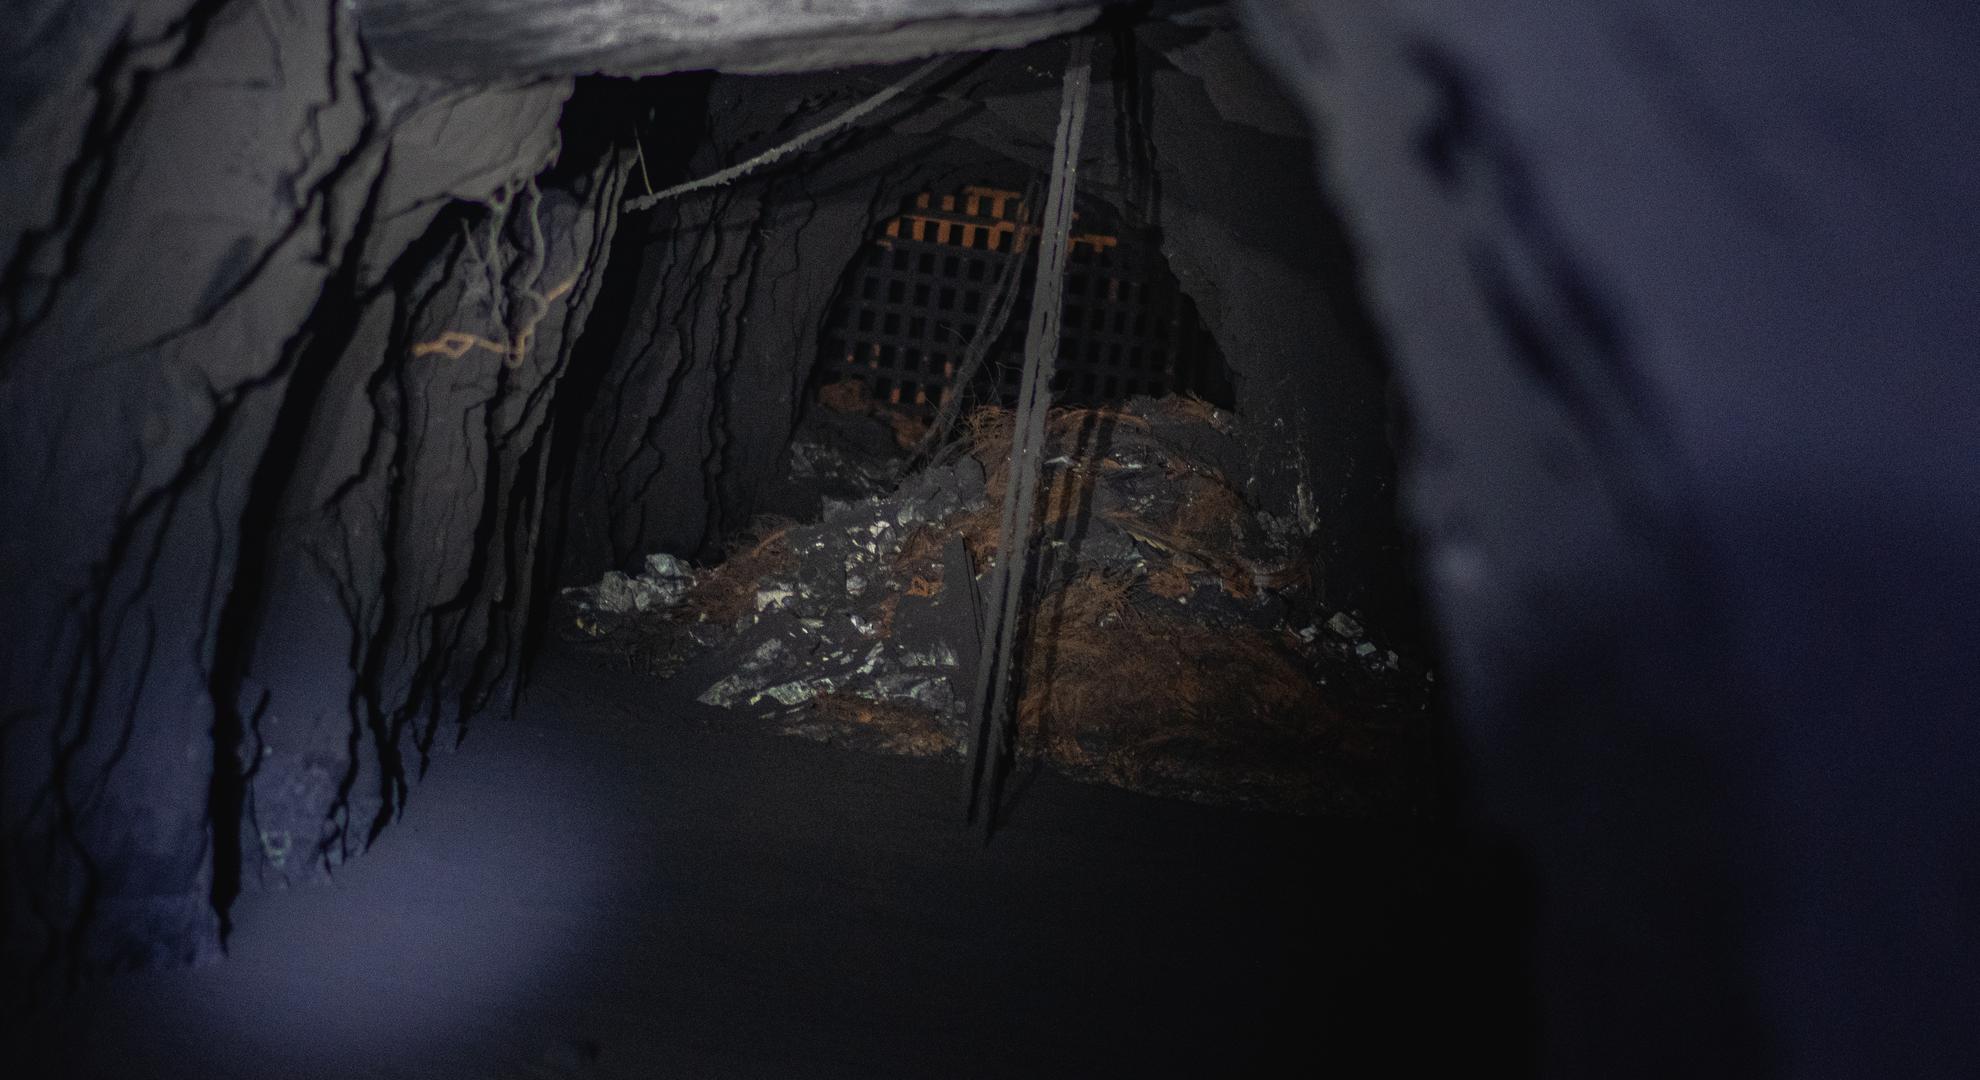 La reja al fondo fue instalada por Poderosa para evitar que los mineros ilegales o parqueros accedan a las operaciones de la minera. Las rocas están negras por el humo, al igual que el agua en el suelo, cubierta de restos espesos.